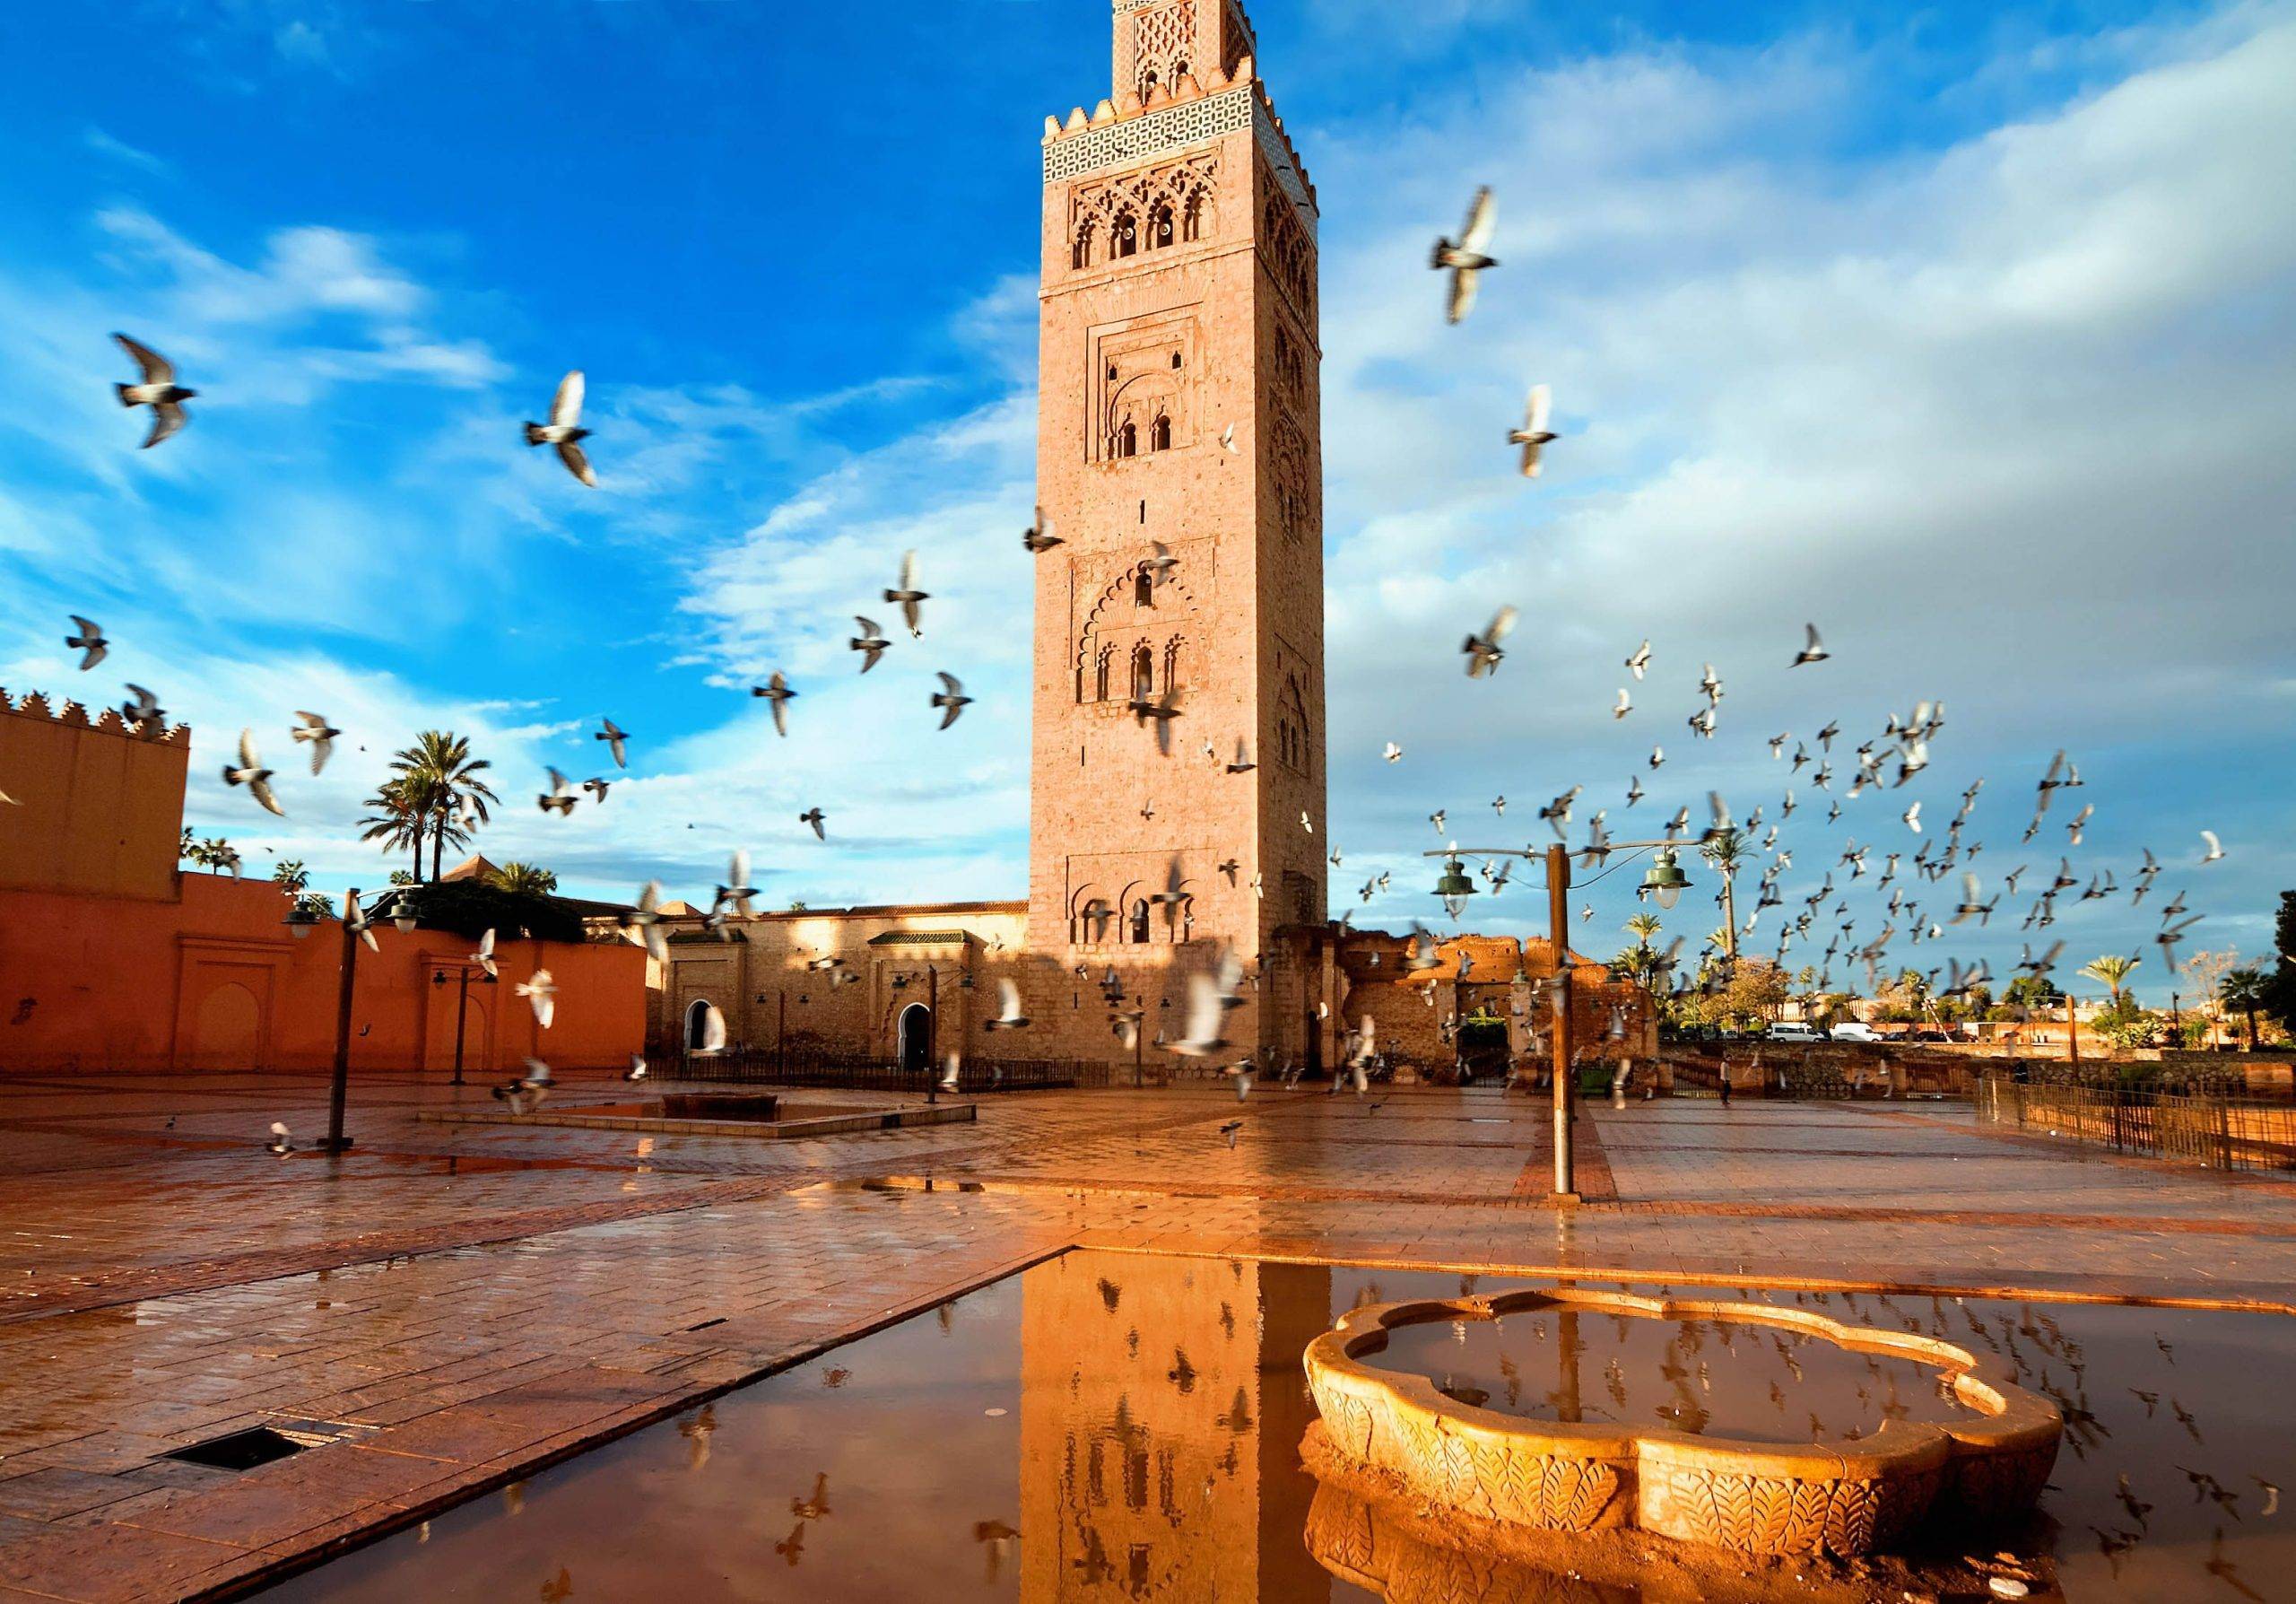 koutoubia-mosque-marrakech-morocco-shutterstock_259018373.jpg_c84d31d602